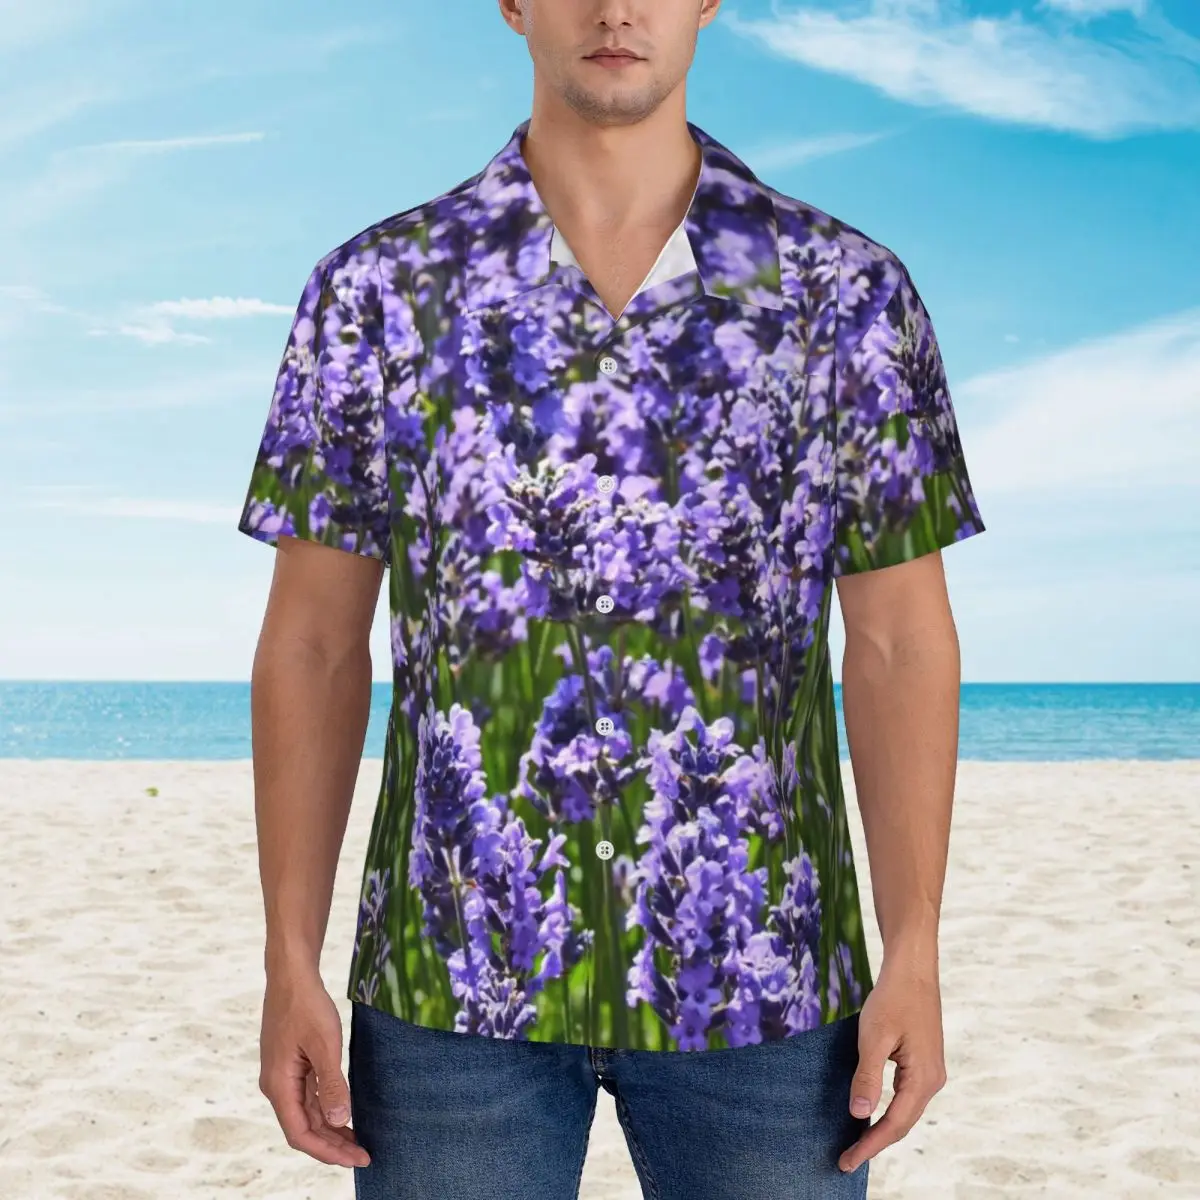 

Пляжная рубашка в стиле ретро для мужчин, красивая пляжная блузка лавандового цвета, в английском стиле, с натуральными фиолетовыми цветами, с коротким рукавом, в подарок, Y2K